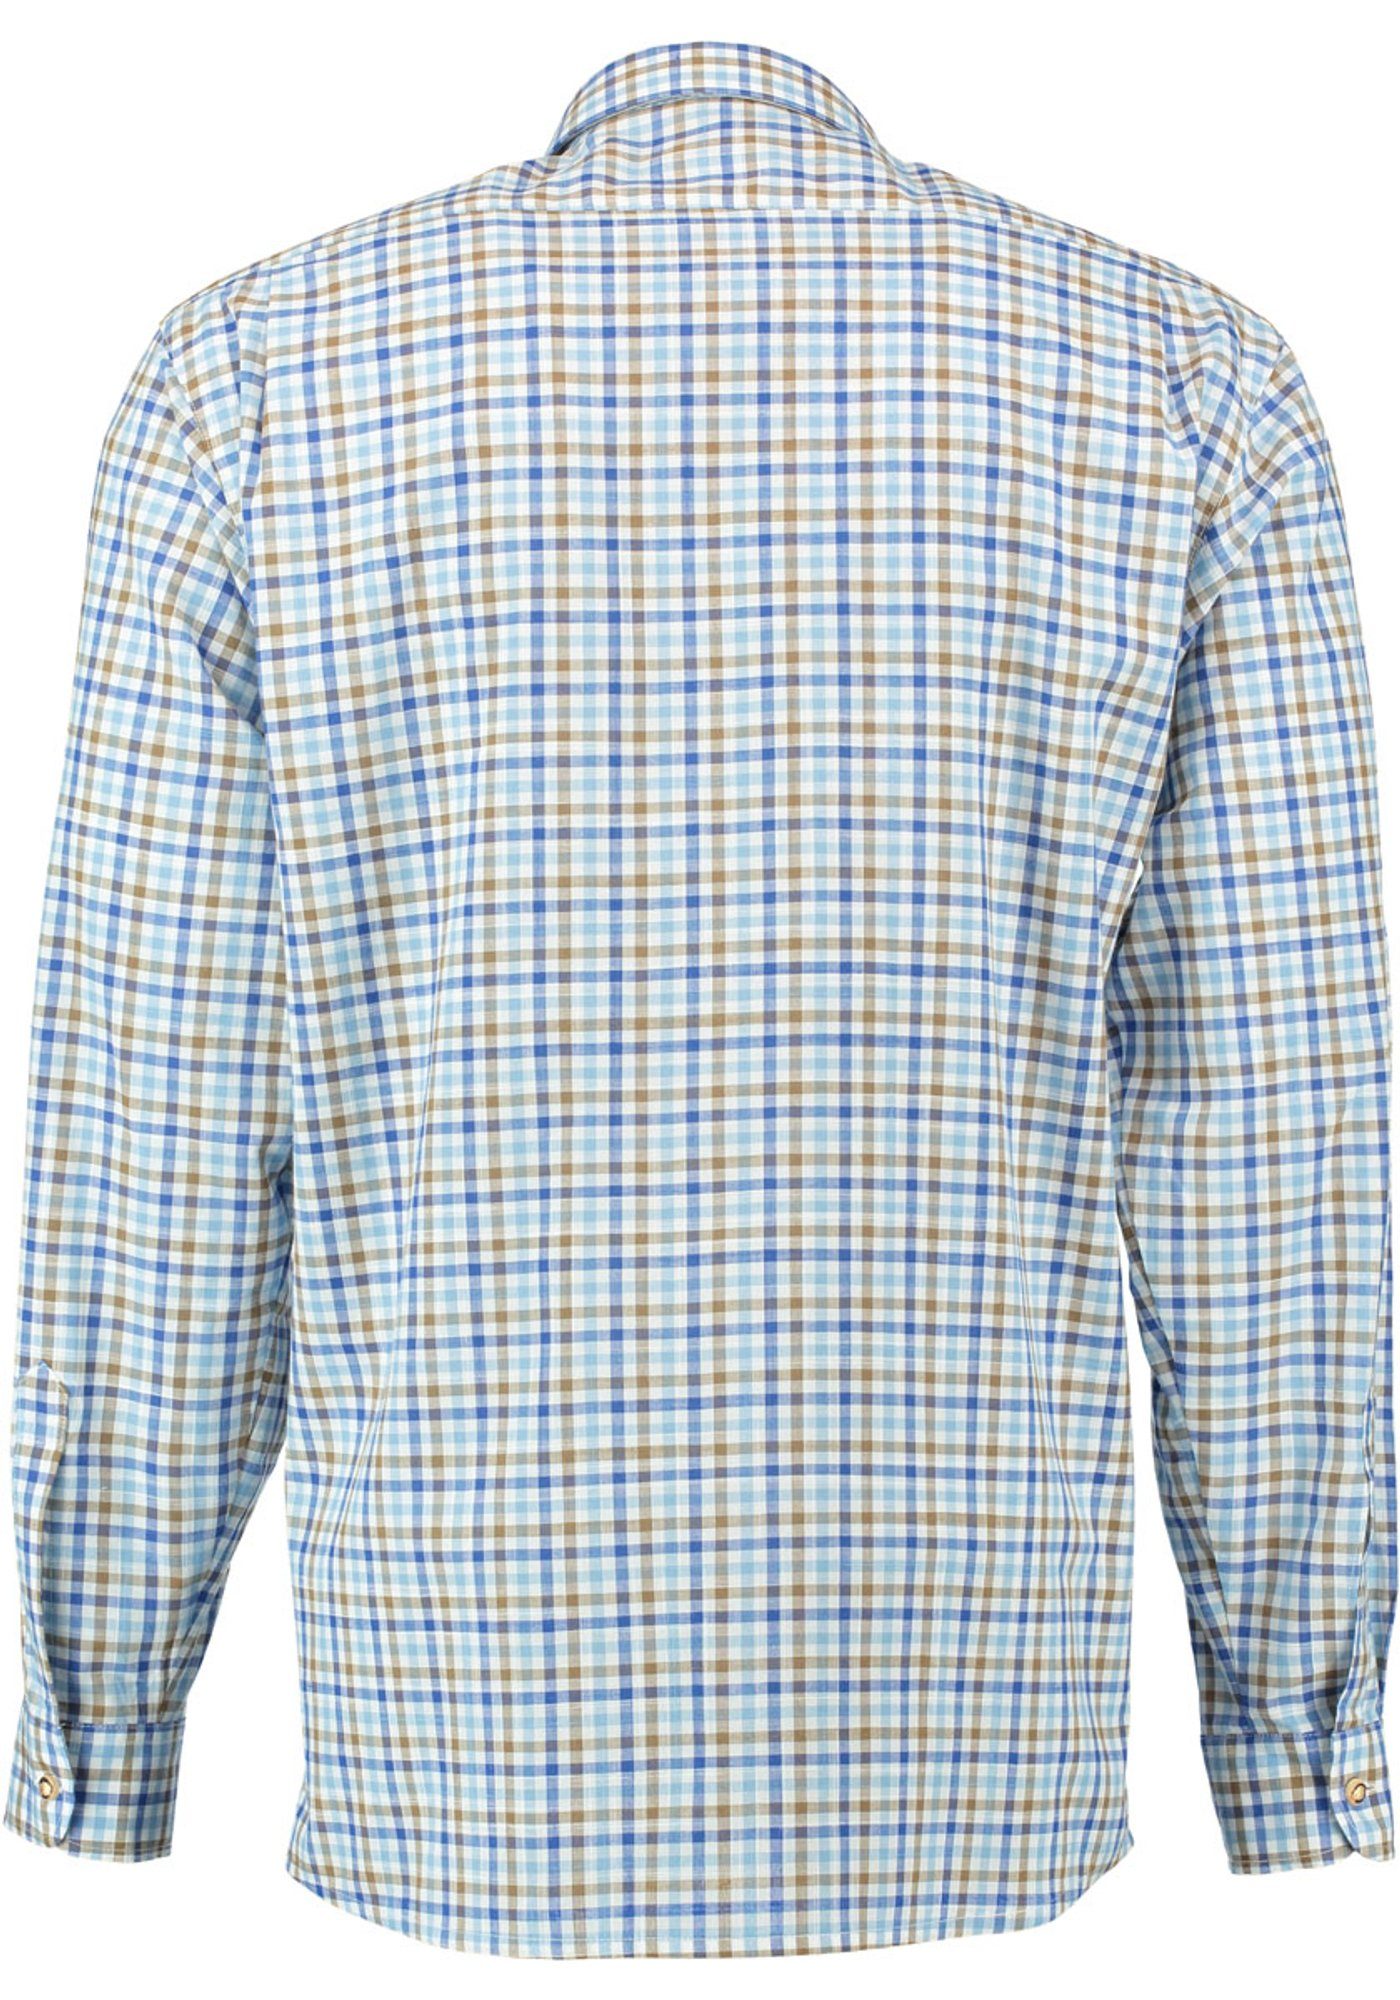 Knopf Herren Trachtenhemd Langarmhemd mit mit Ployos Paspeltasche hellbraun OS-Trachten